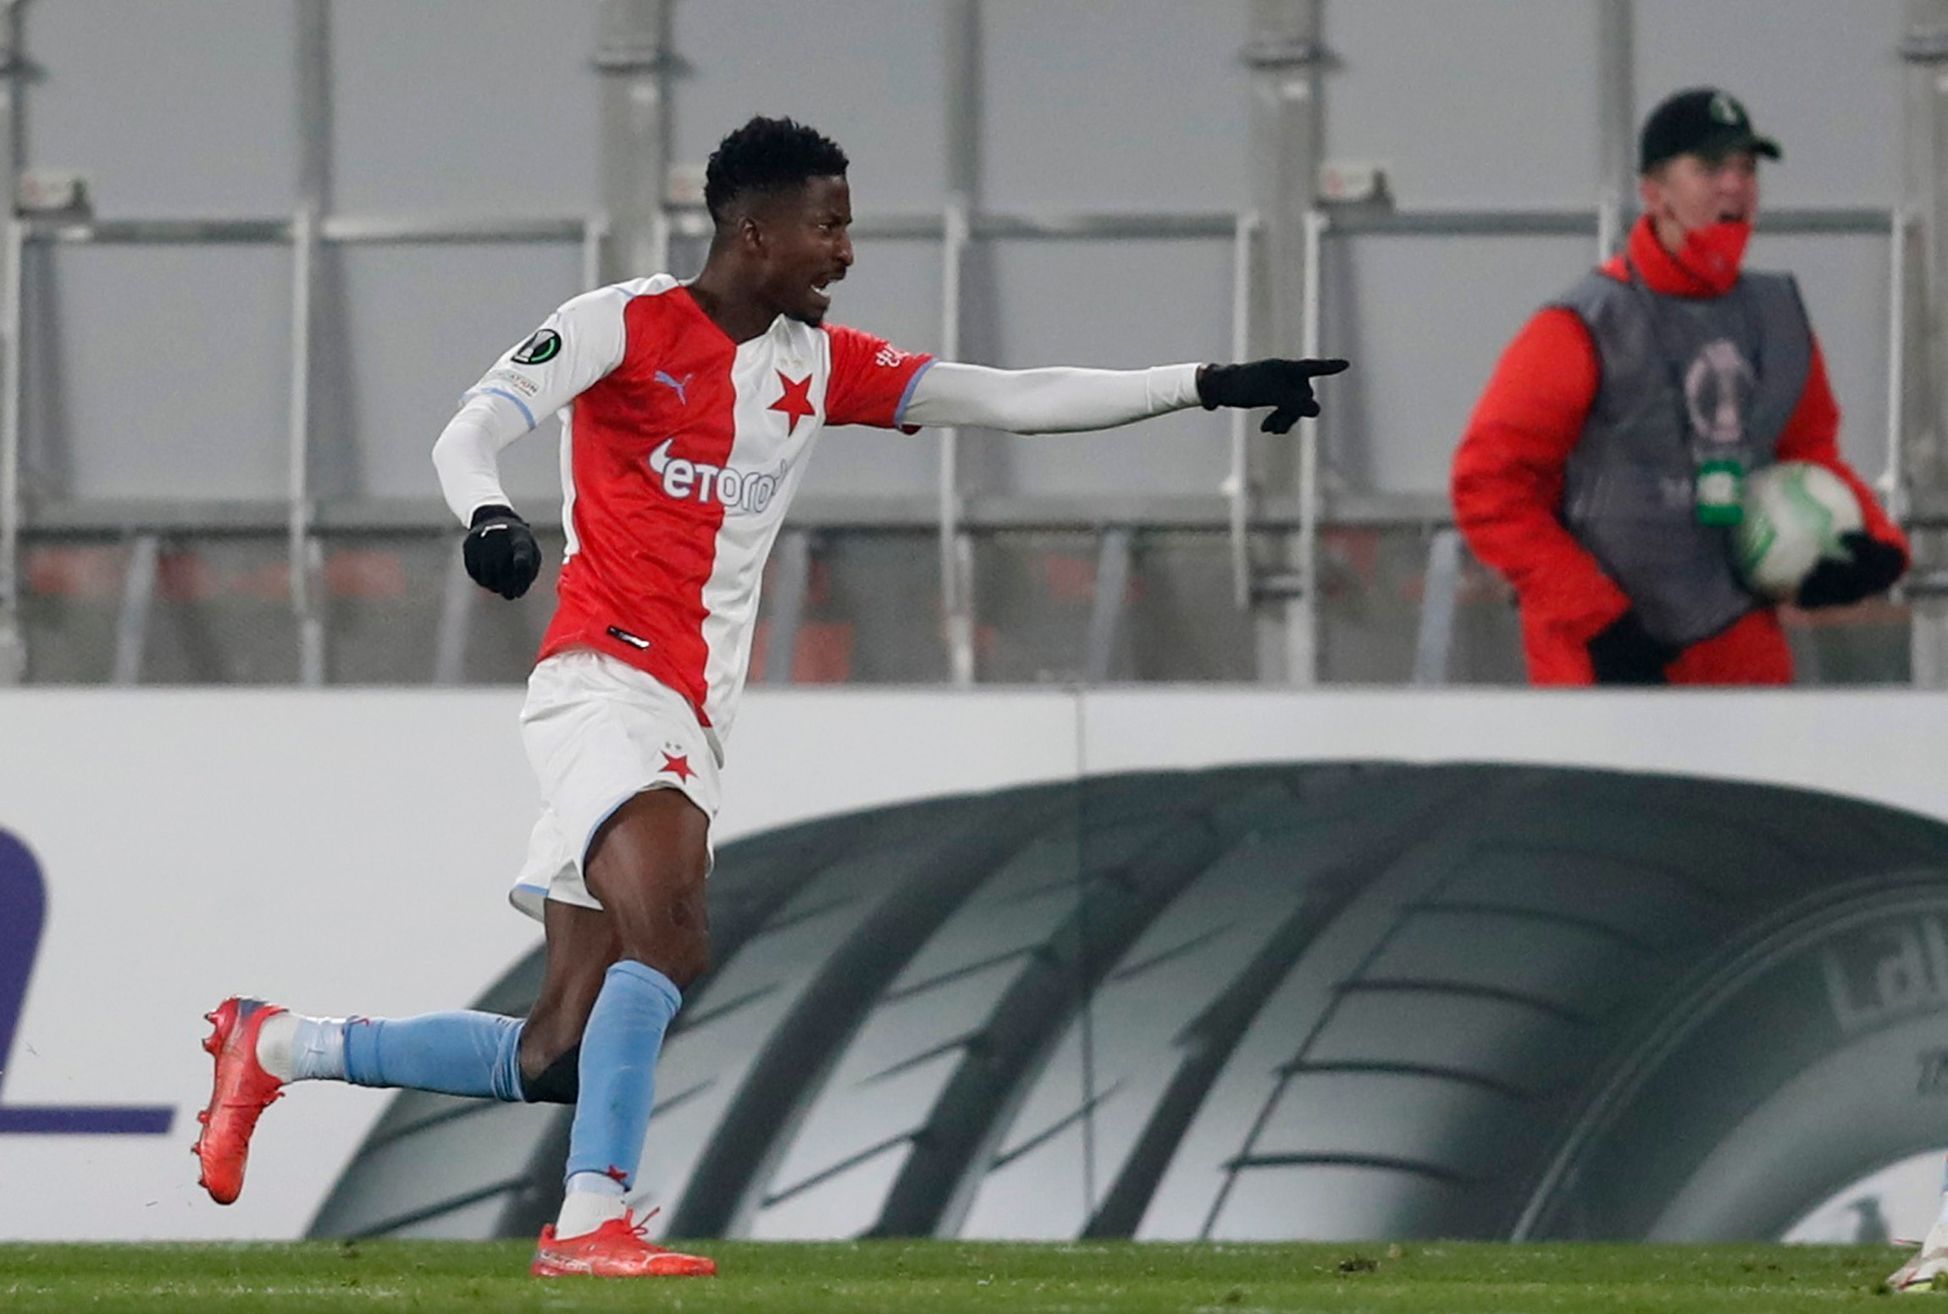 Peter Olayinka slaví gól v zápase EL Slavia - Feyenoord